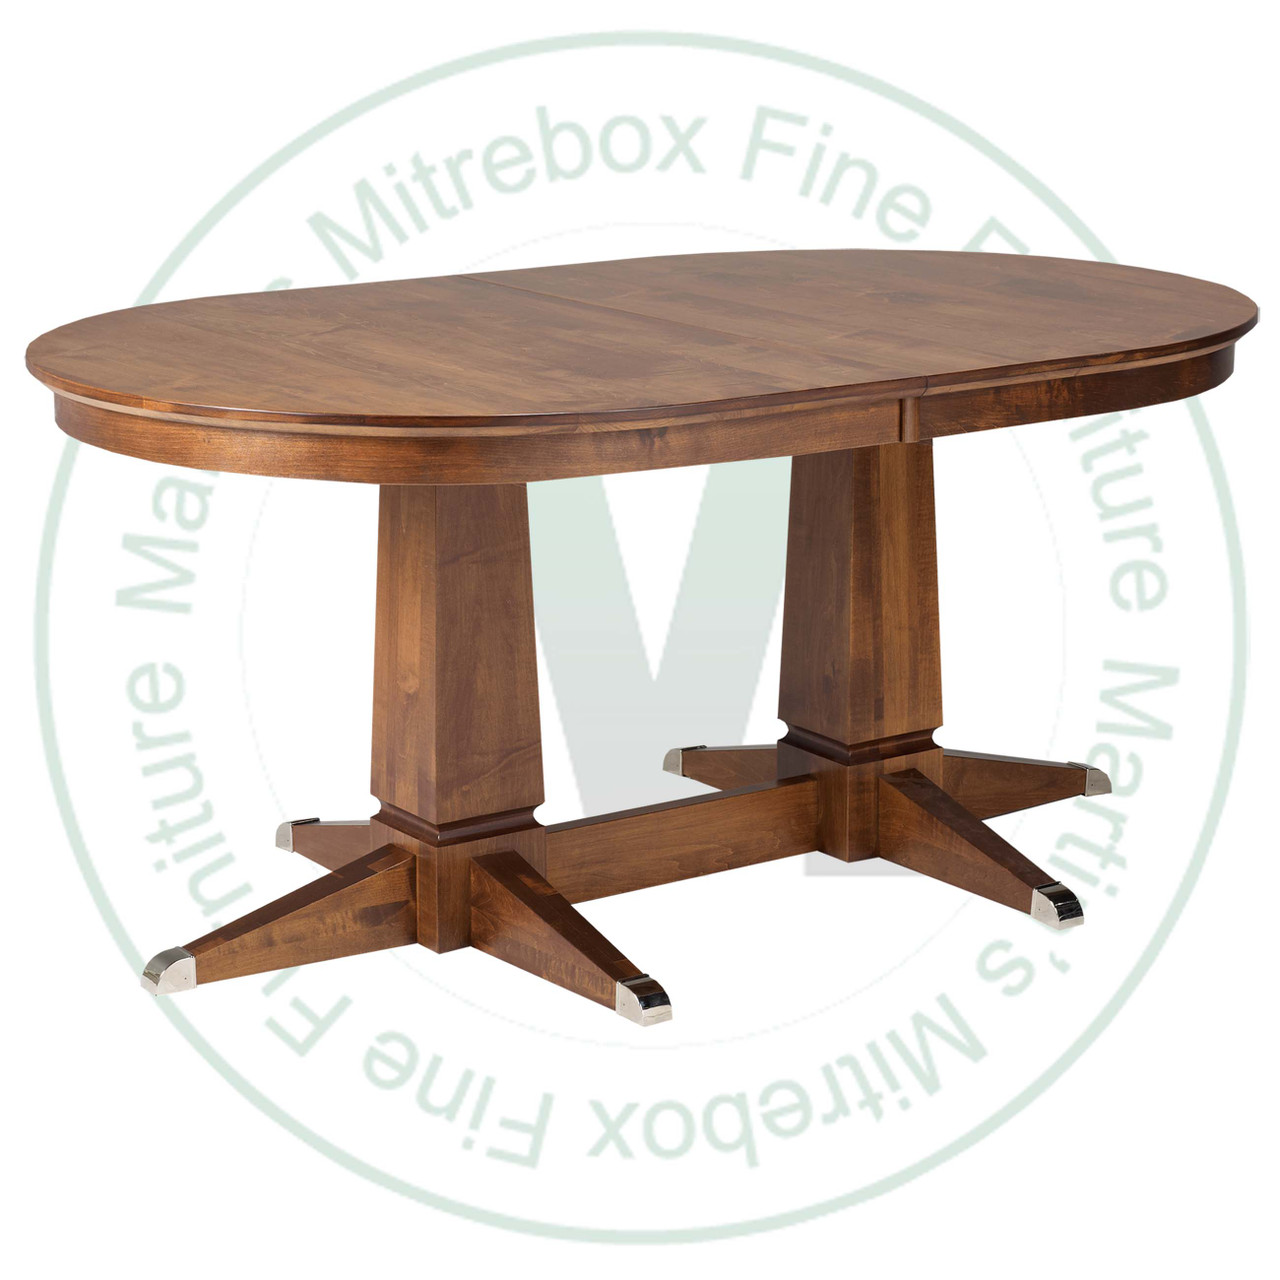 Oak Sweden Double Pedestal Table 48"D x 72"D x 30"H Solid Top.